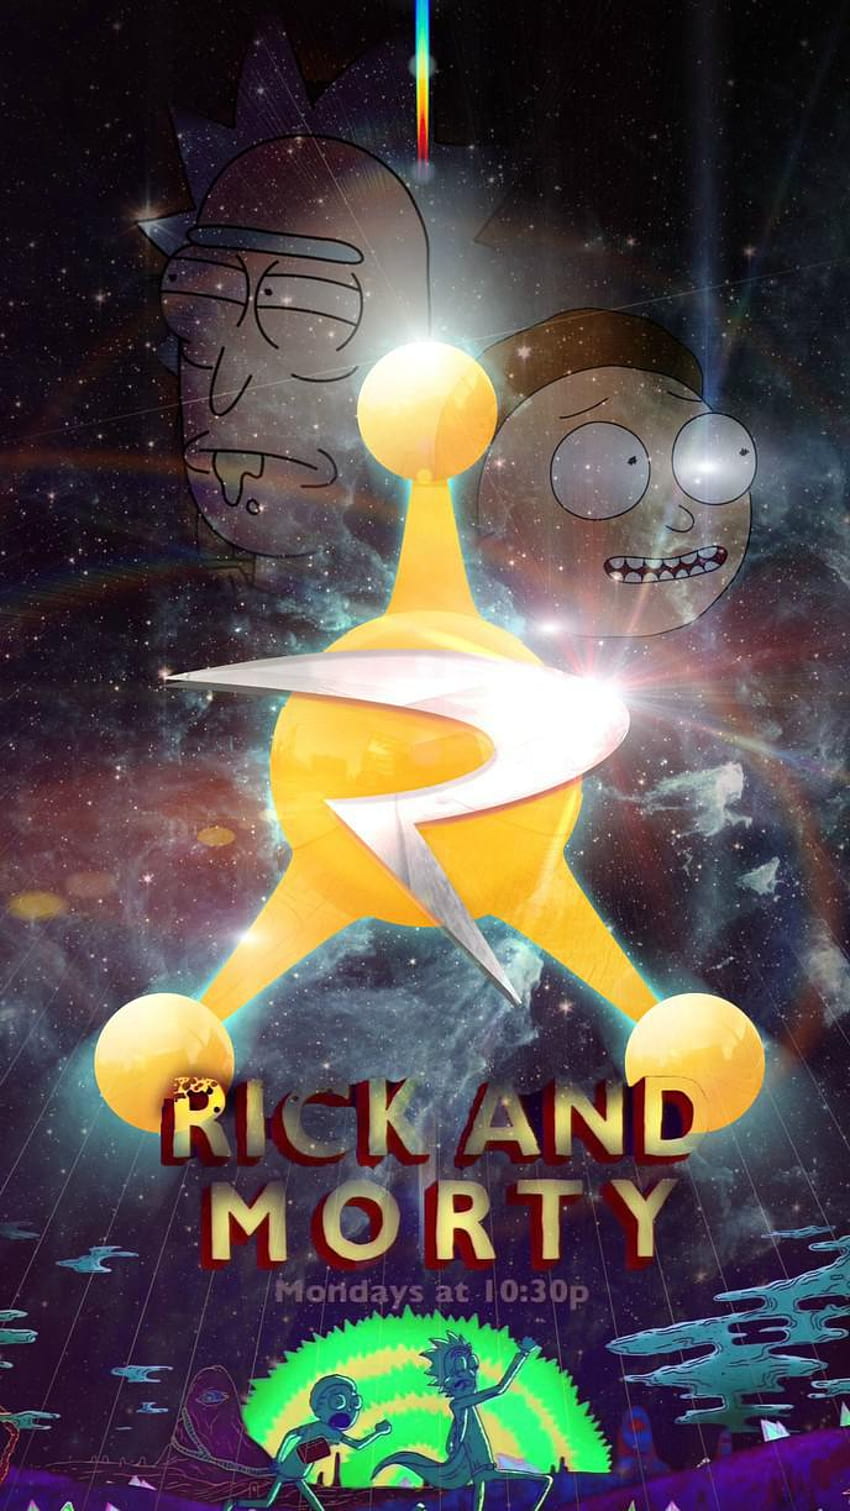 Des s de Rick & Morty para PC y smartphones, Retrato Rick and Morty fondo de pantalla del teléfono